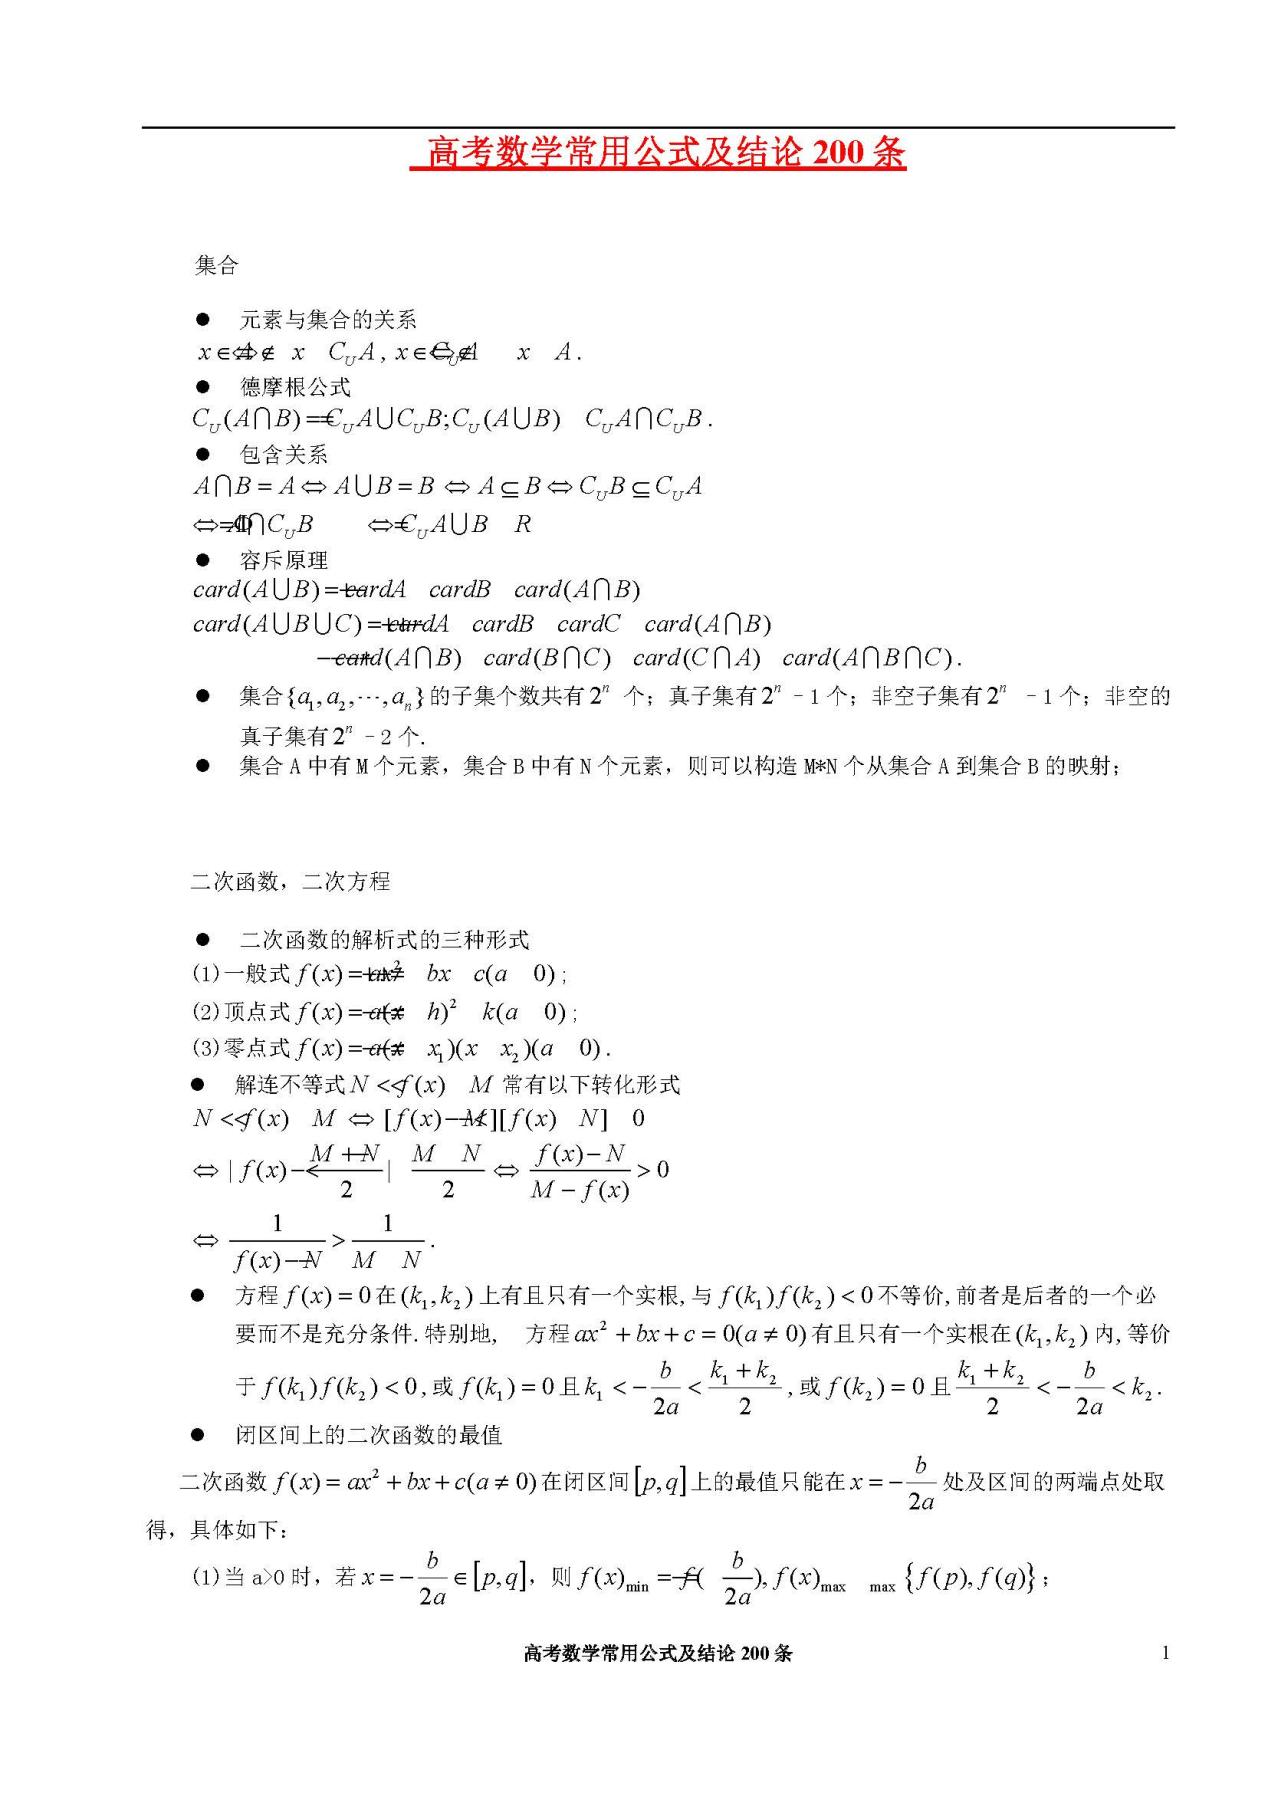 【32页】高考数学: 常考公式及常用结论合集, 超高实用性, 考前一定要背完!